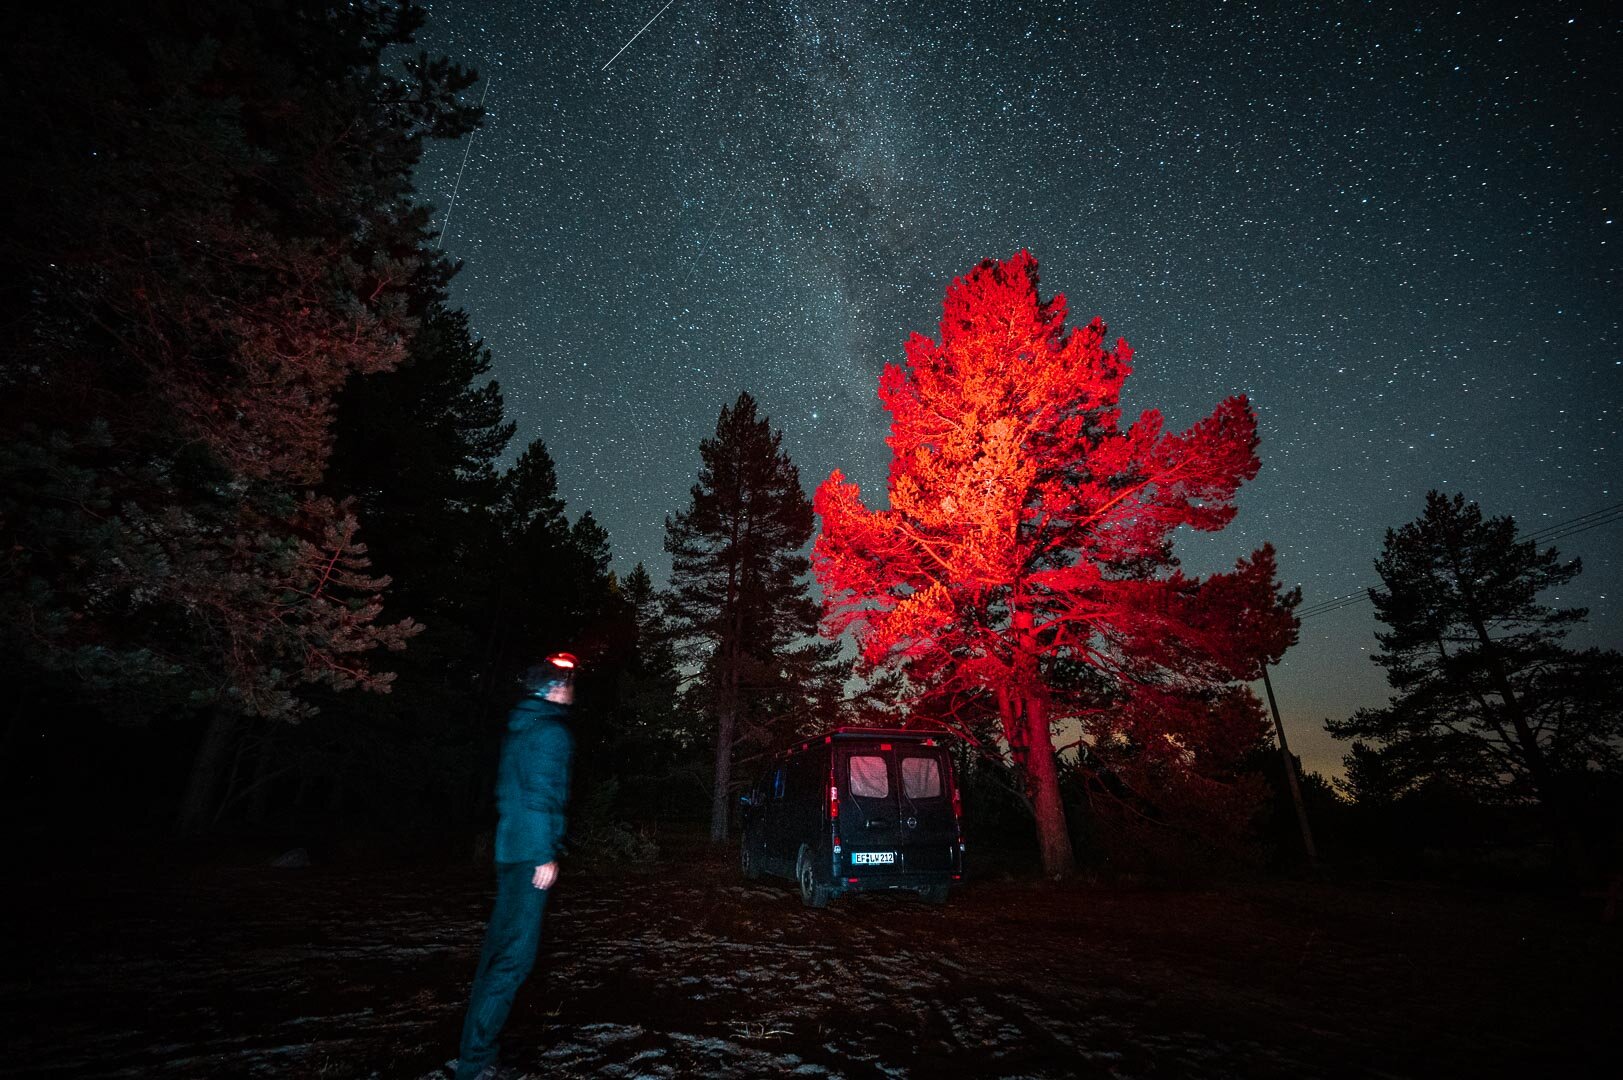 Stirnlampe Rotlicht - Astrofotografie — Landschaftsfotograf Lucas